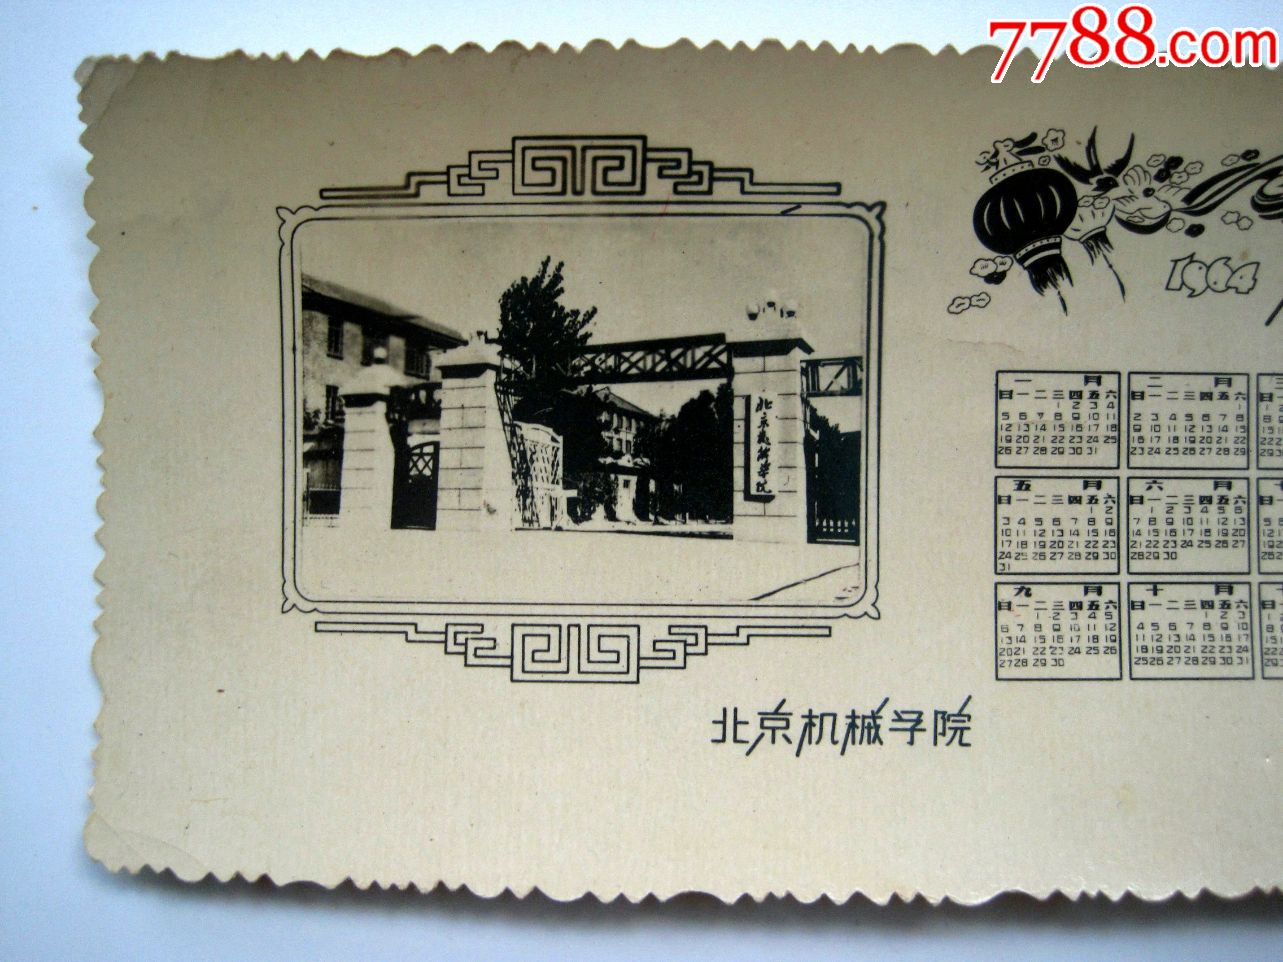 北京机械学院旧址图片